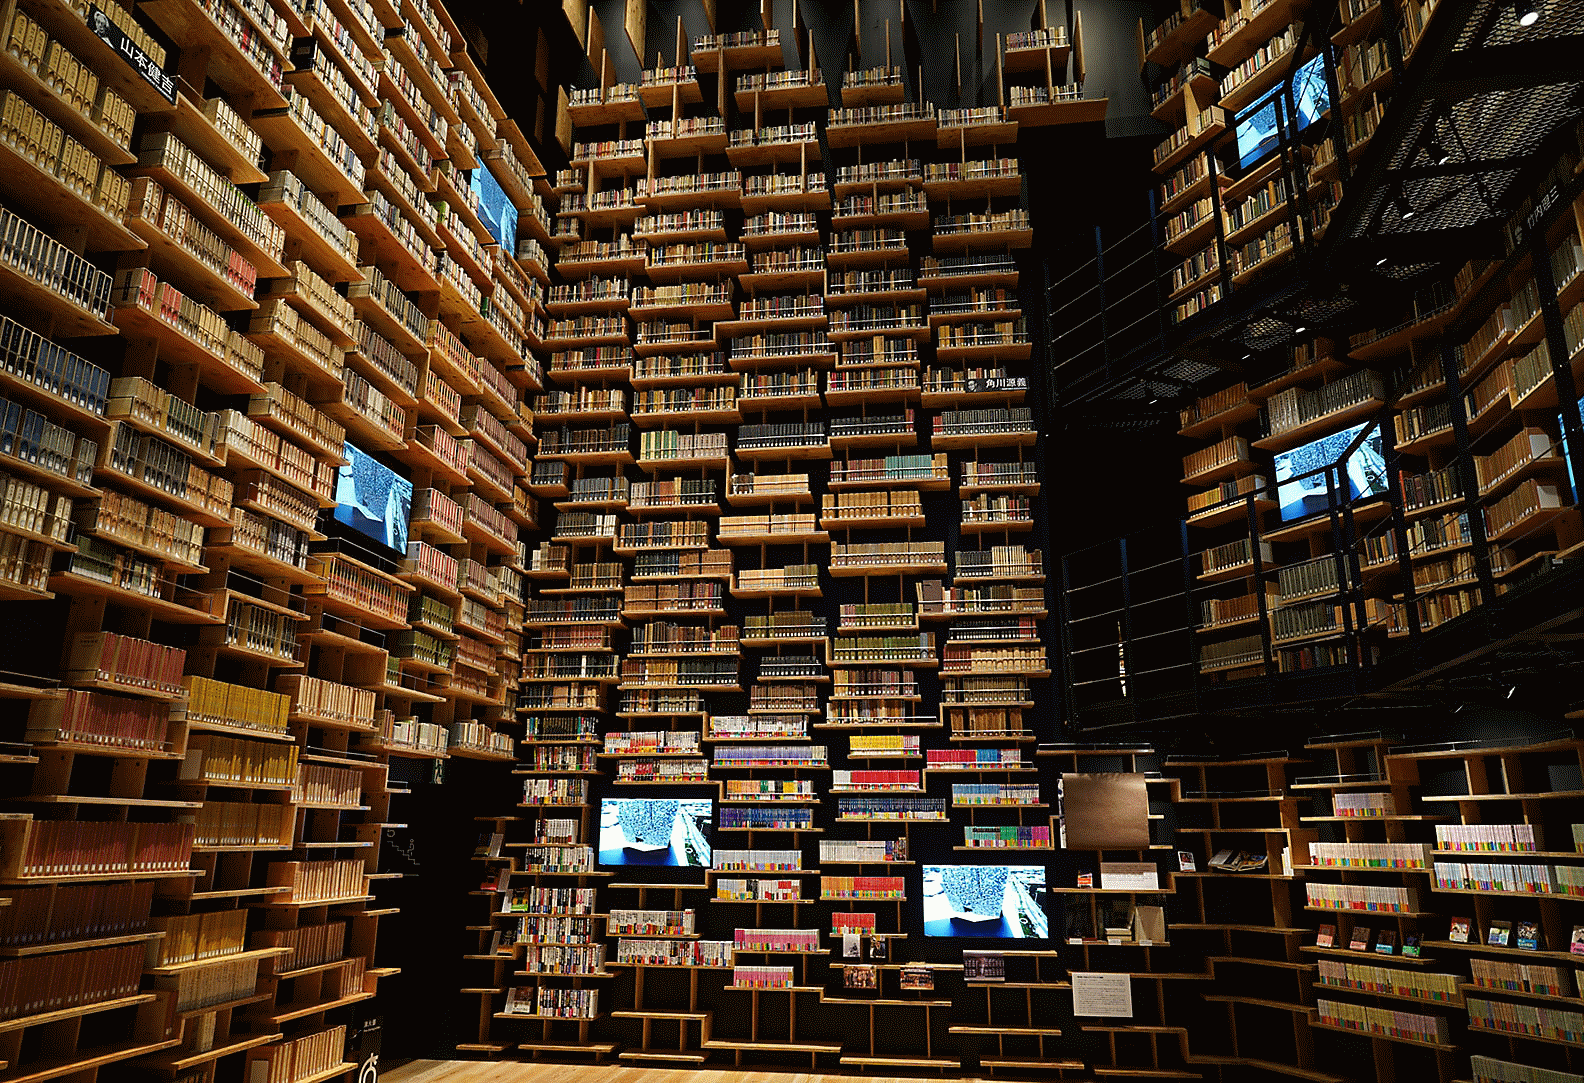 Imagen del interior de una biblioteca capturada con esta lente con alta resolución en todo el encuadre